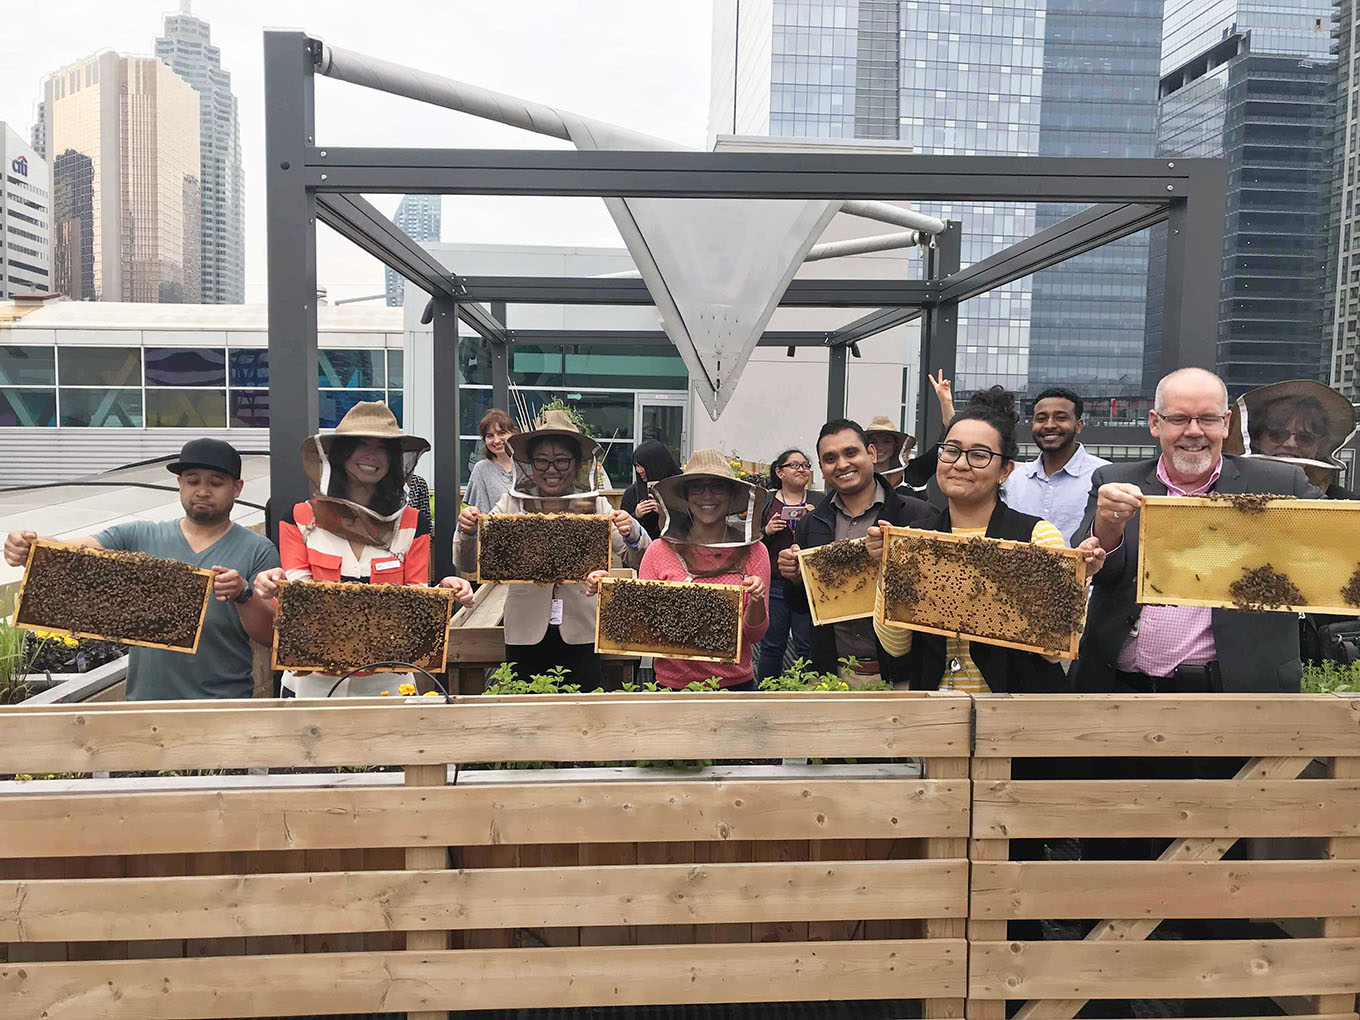 Metro Toronto Convention Centre's tenants holding Alvéole's hives.